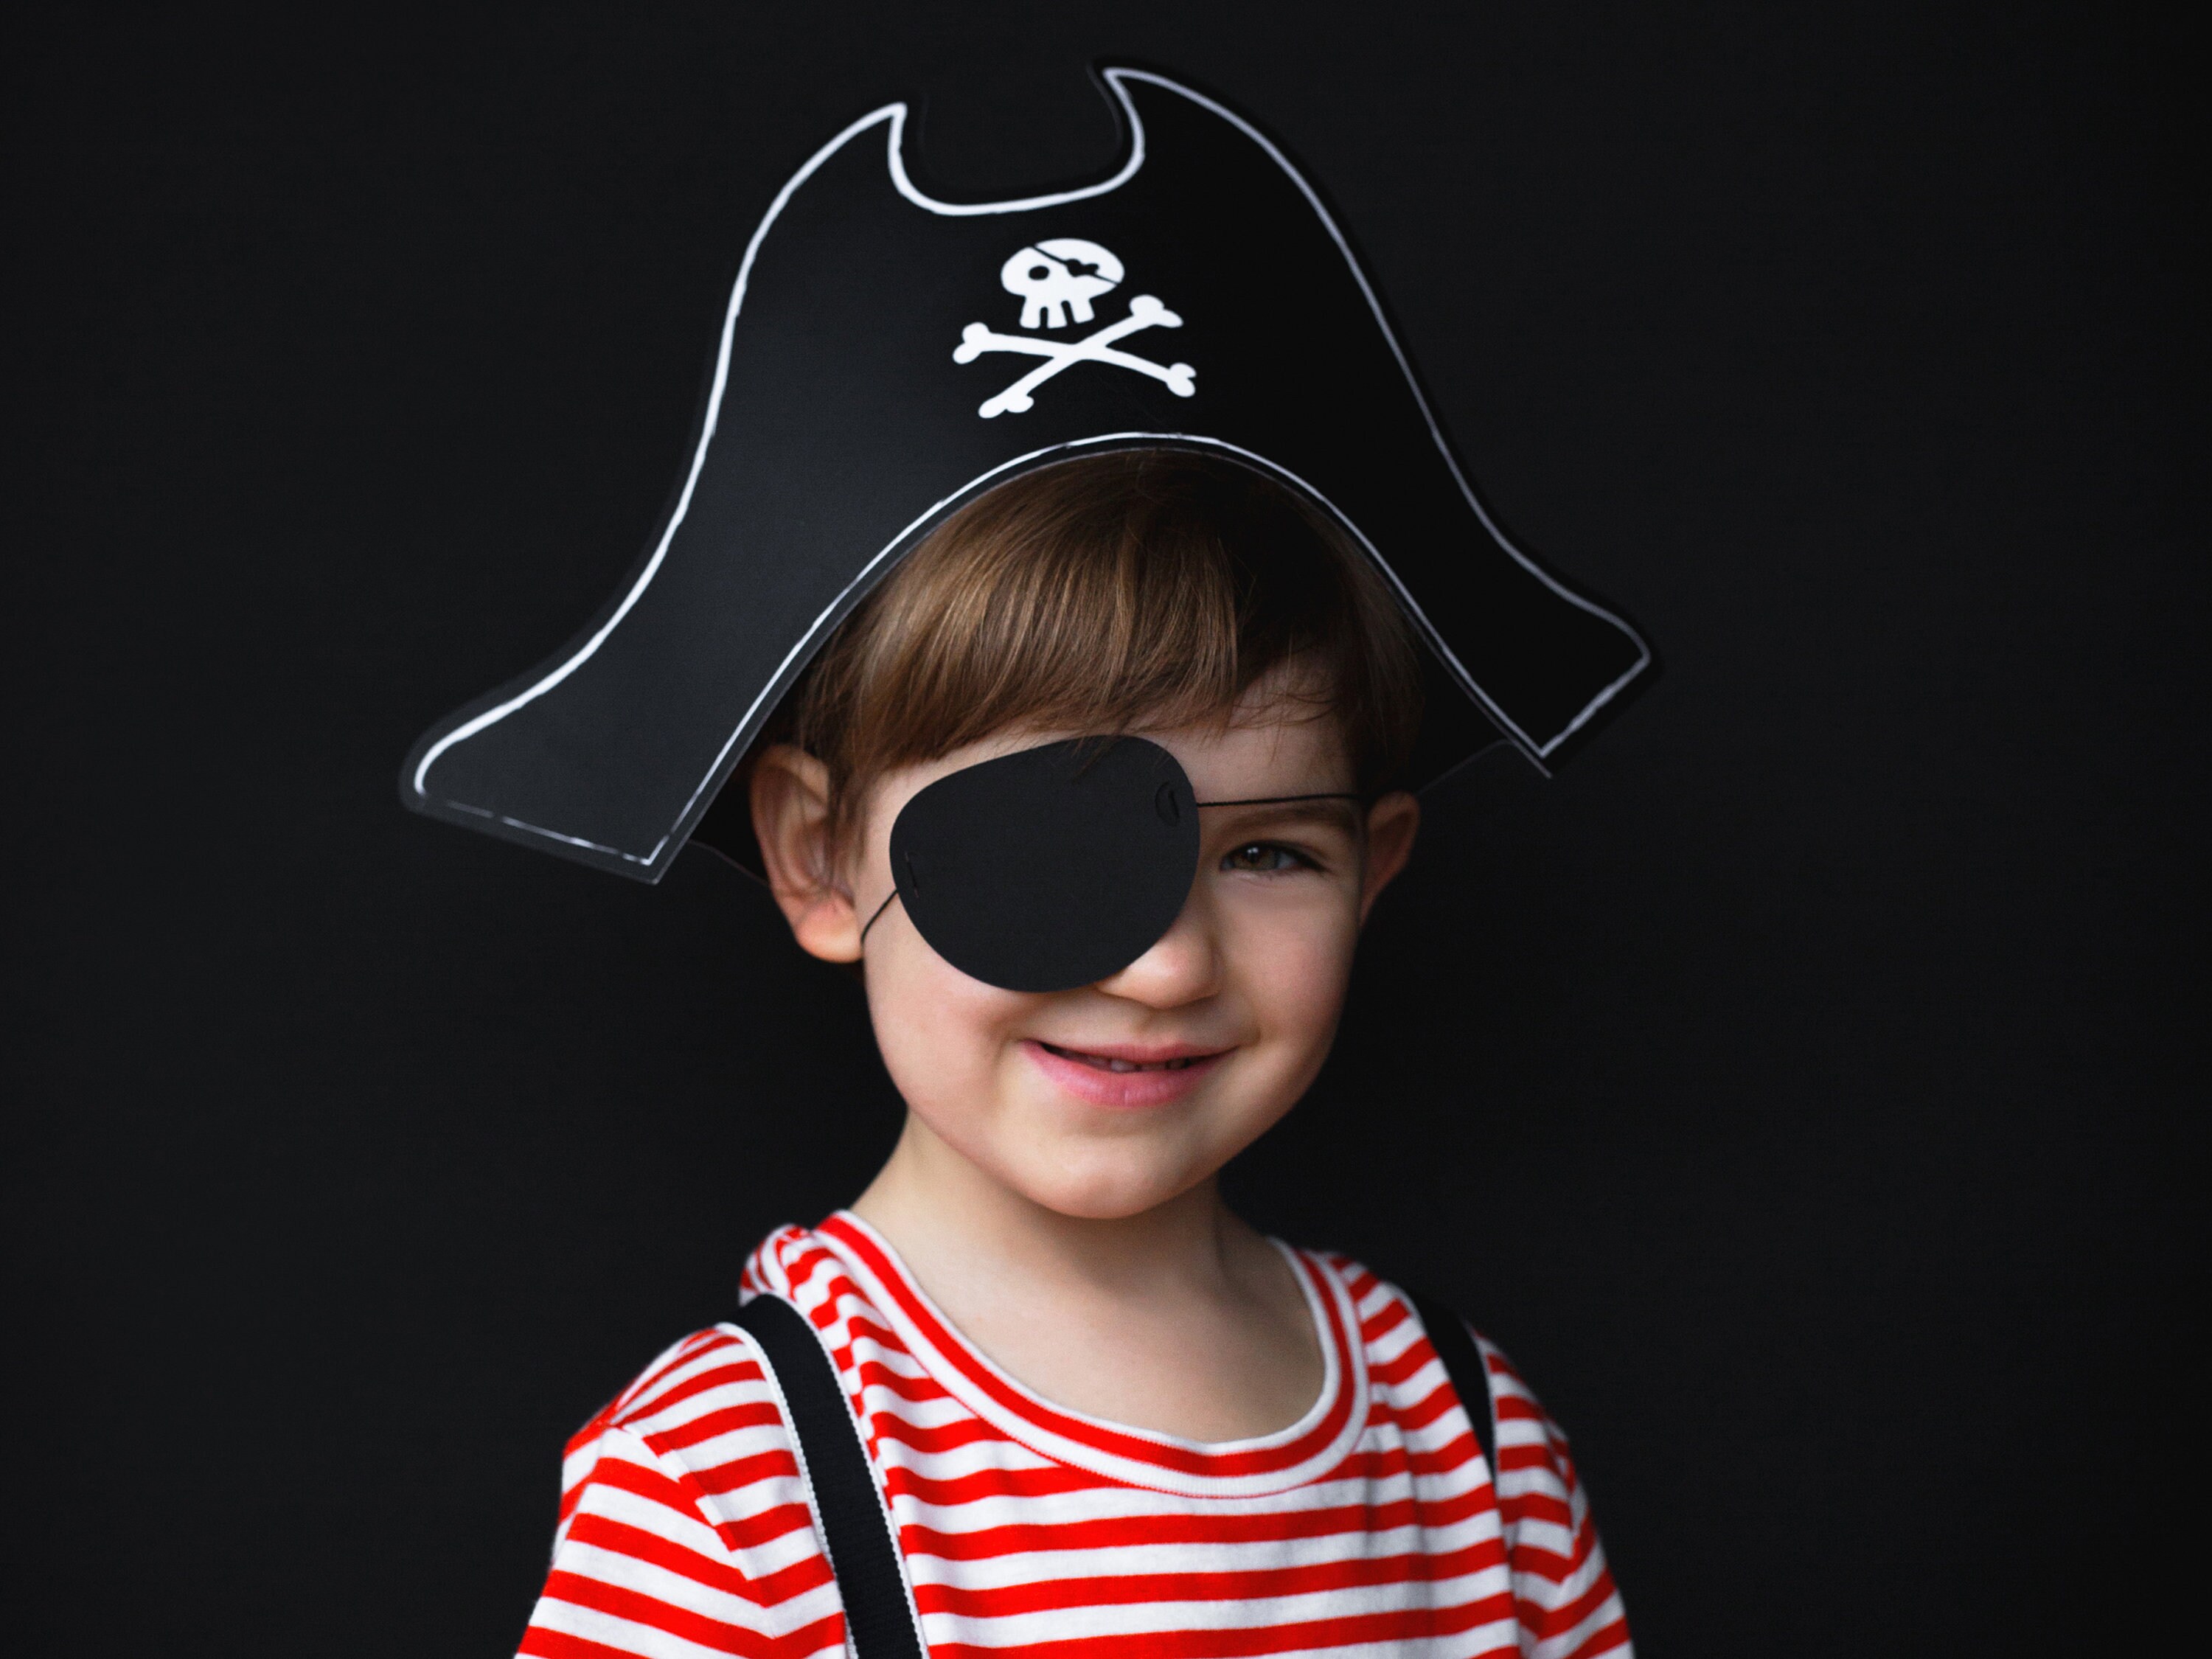 Sombrero pirata en nuestra sección• Mi Fiesta de Papel